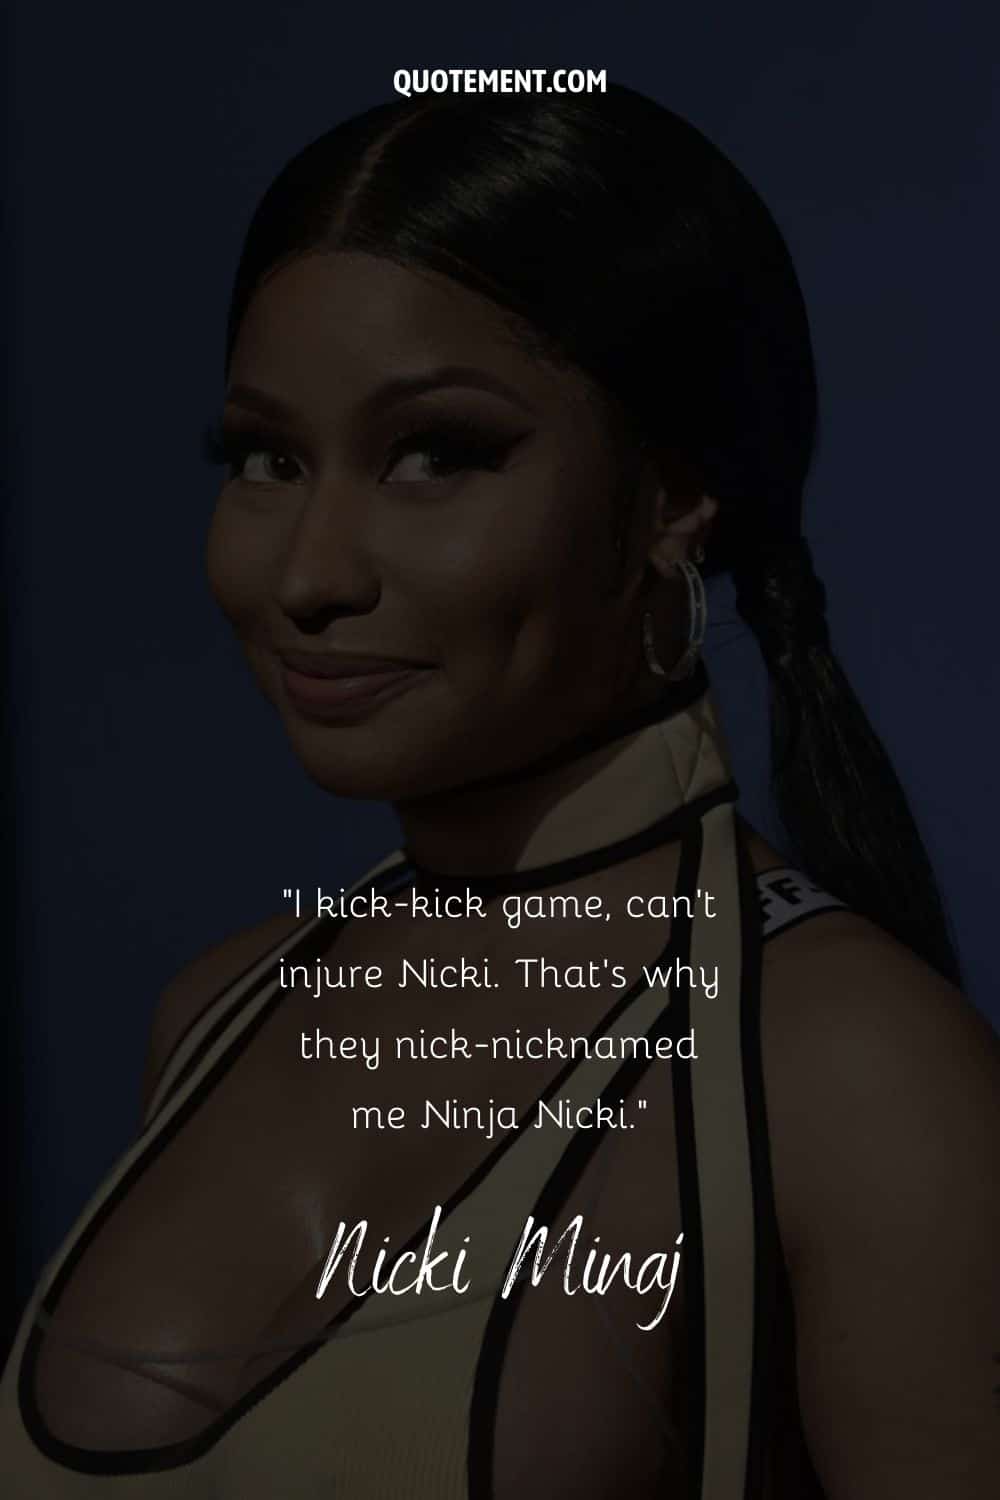 Divertida cita de Nicki Minaj mencionando su apodo, y su retrato de fondo también